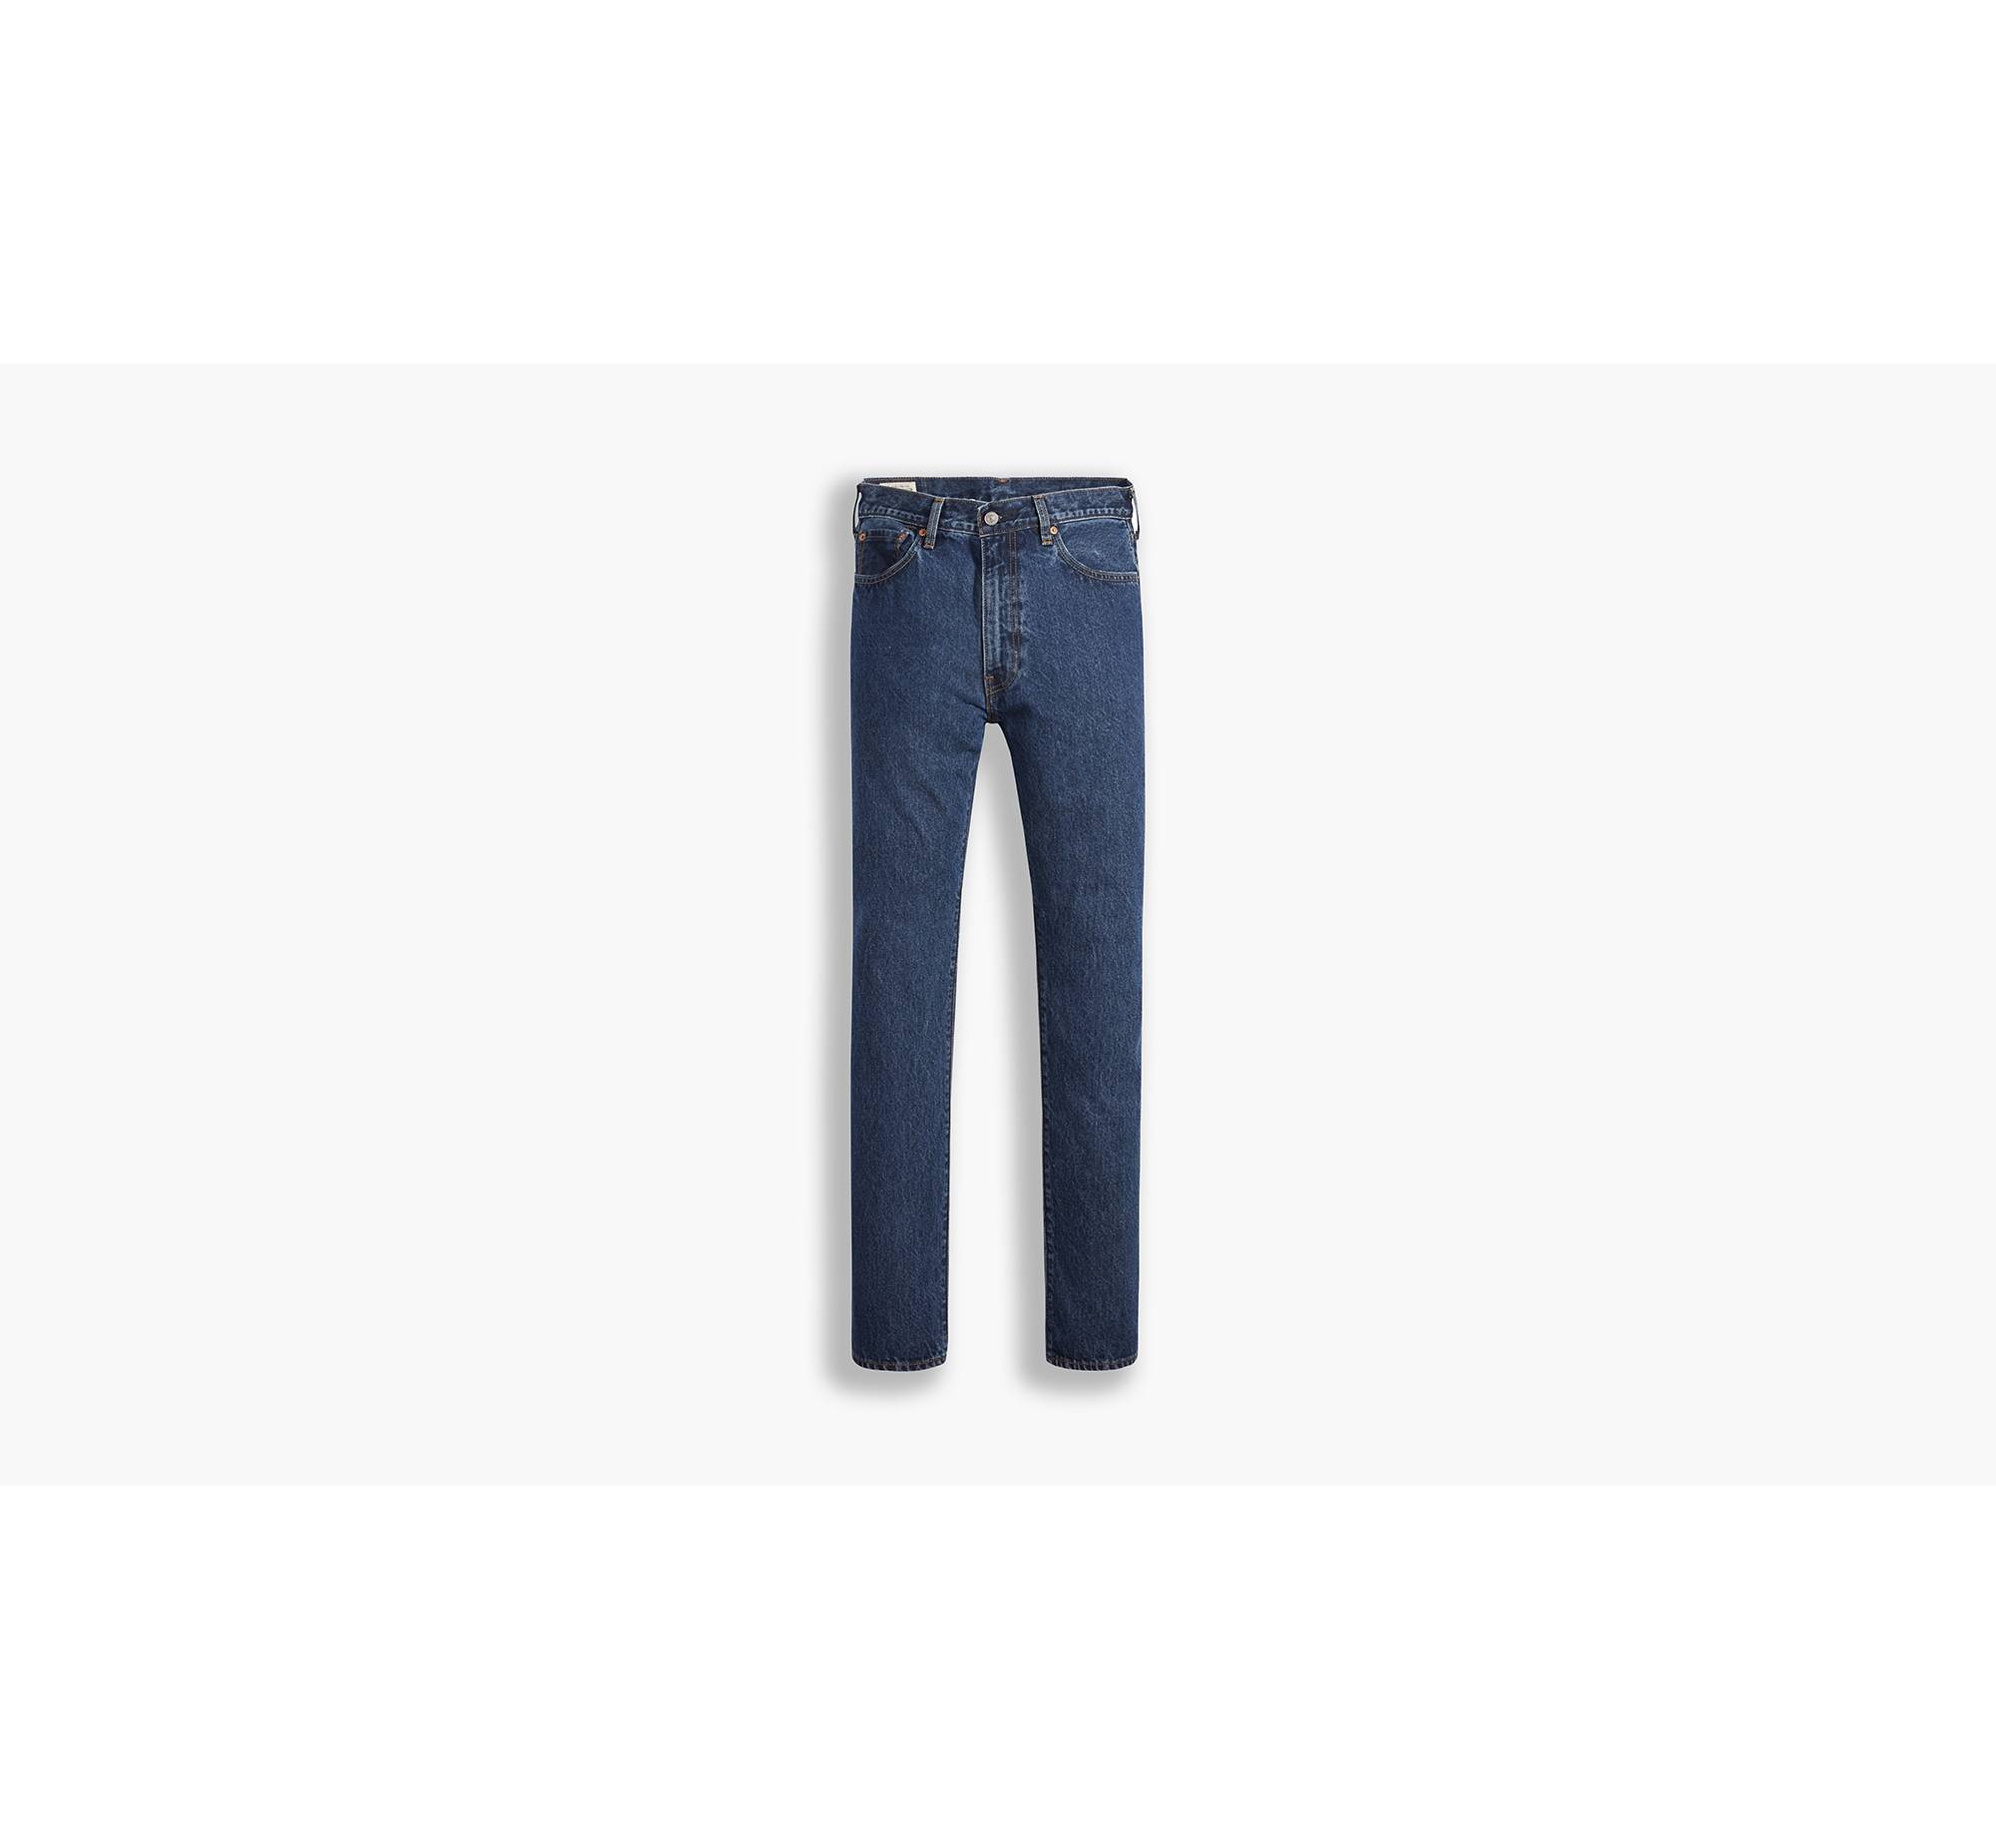 Z Authentic Straight Fit Men's Jeans - Medium Wash | Levi's® US